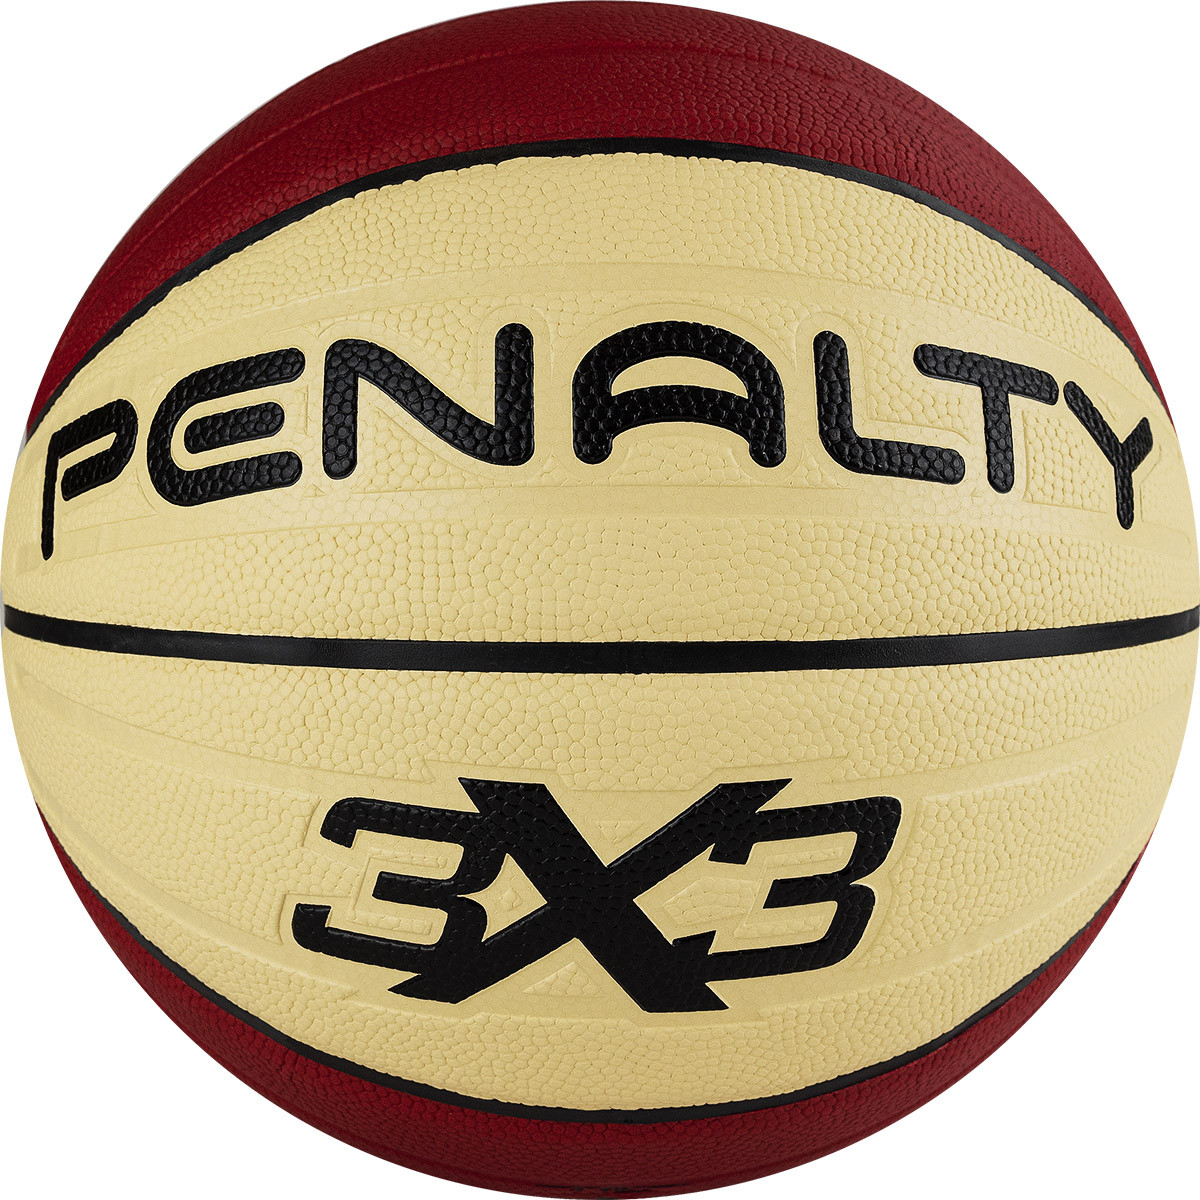 Купить Мяч баскетбольный Penalty Bola Basquete 3X3 PRO IX ,5113134340-U, р.6, ПУ, бутил. камера, красно-беж.,